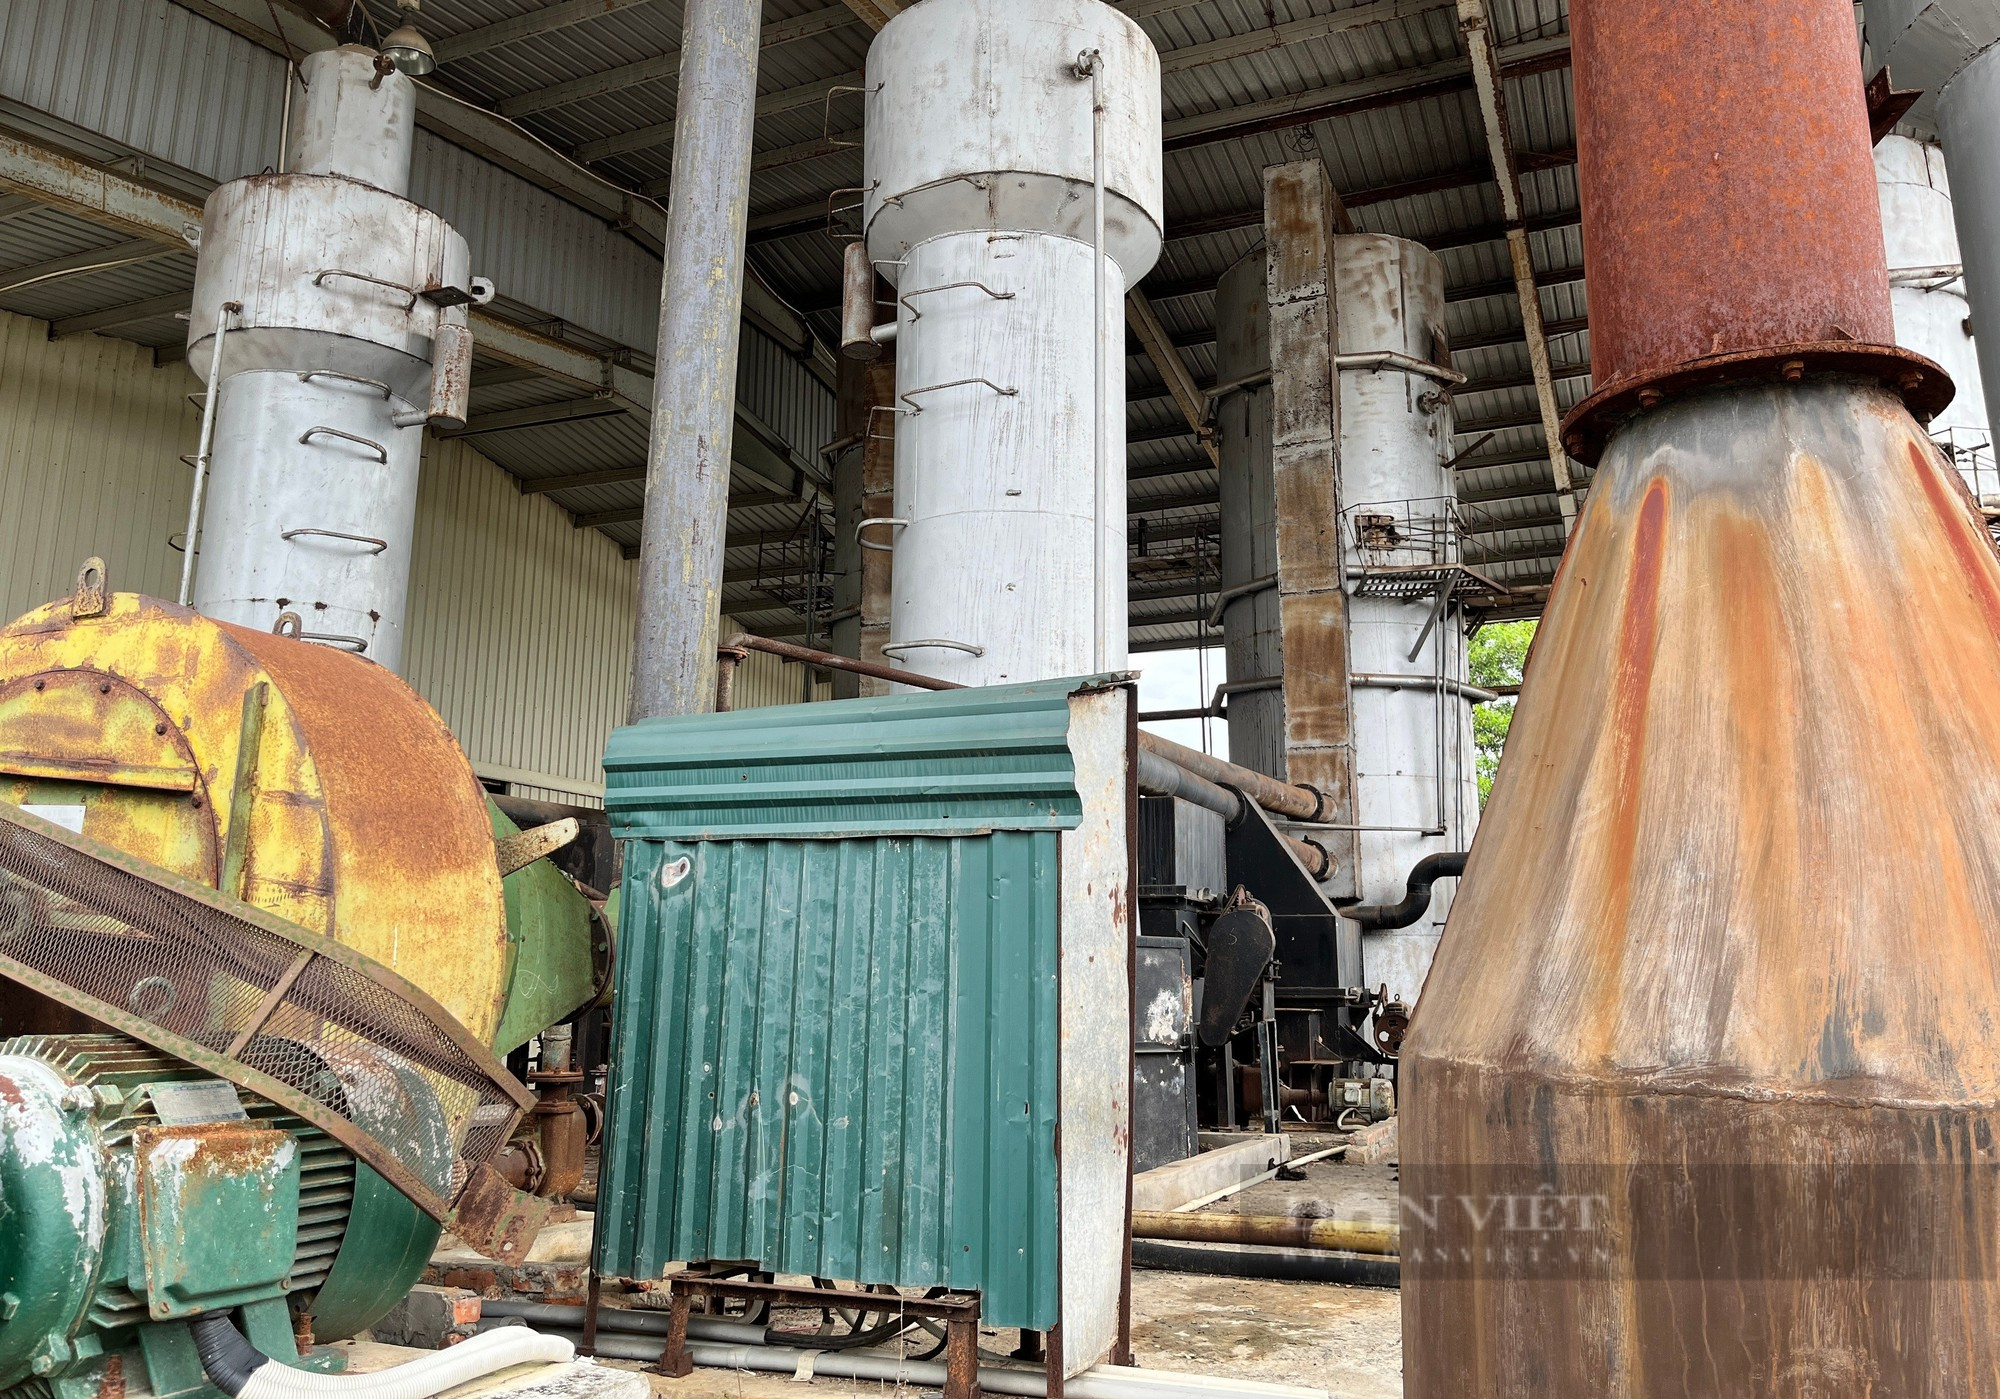 Nhà máy bột giấy hơn 1.200 tỷ hoang tàn sau hơn 10 năm bỏ hoang ở miền Tây Nghệ An - Ảnh 5.